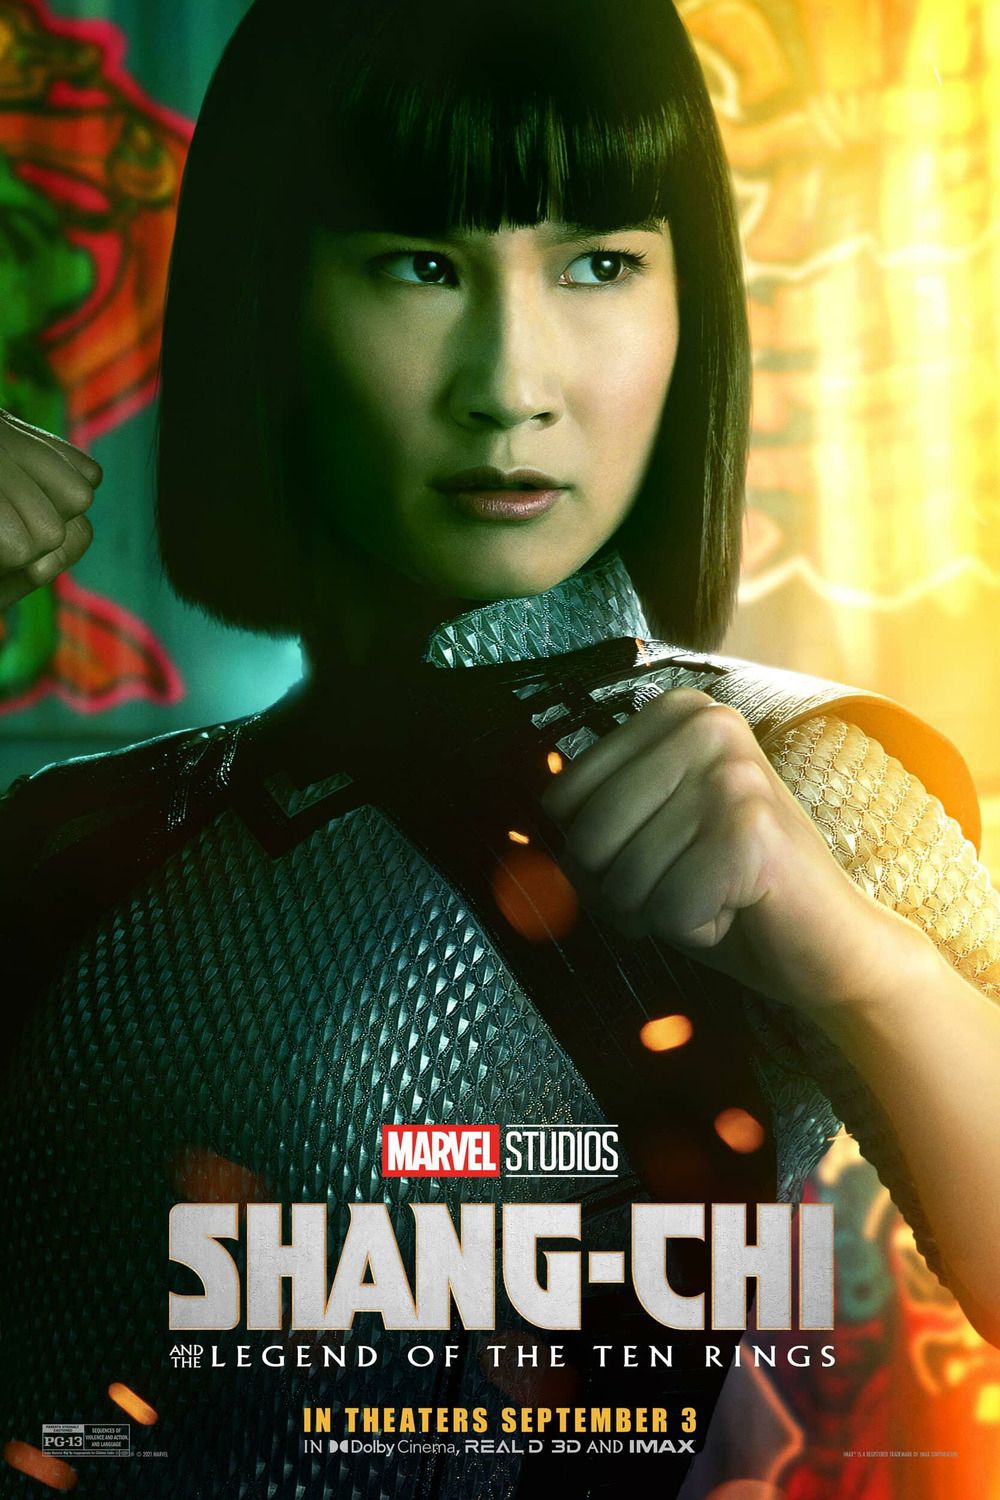 Shang Chi Character Poster Image #5